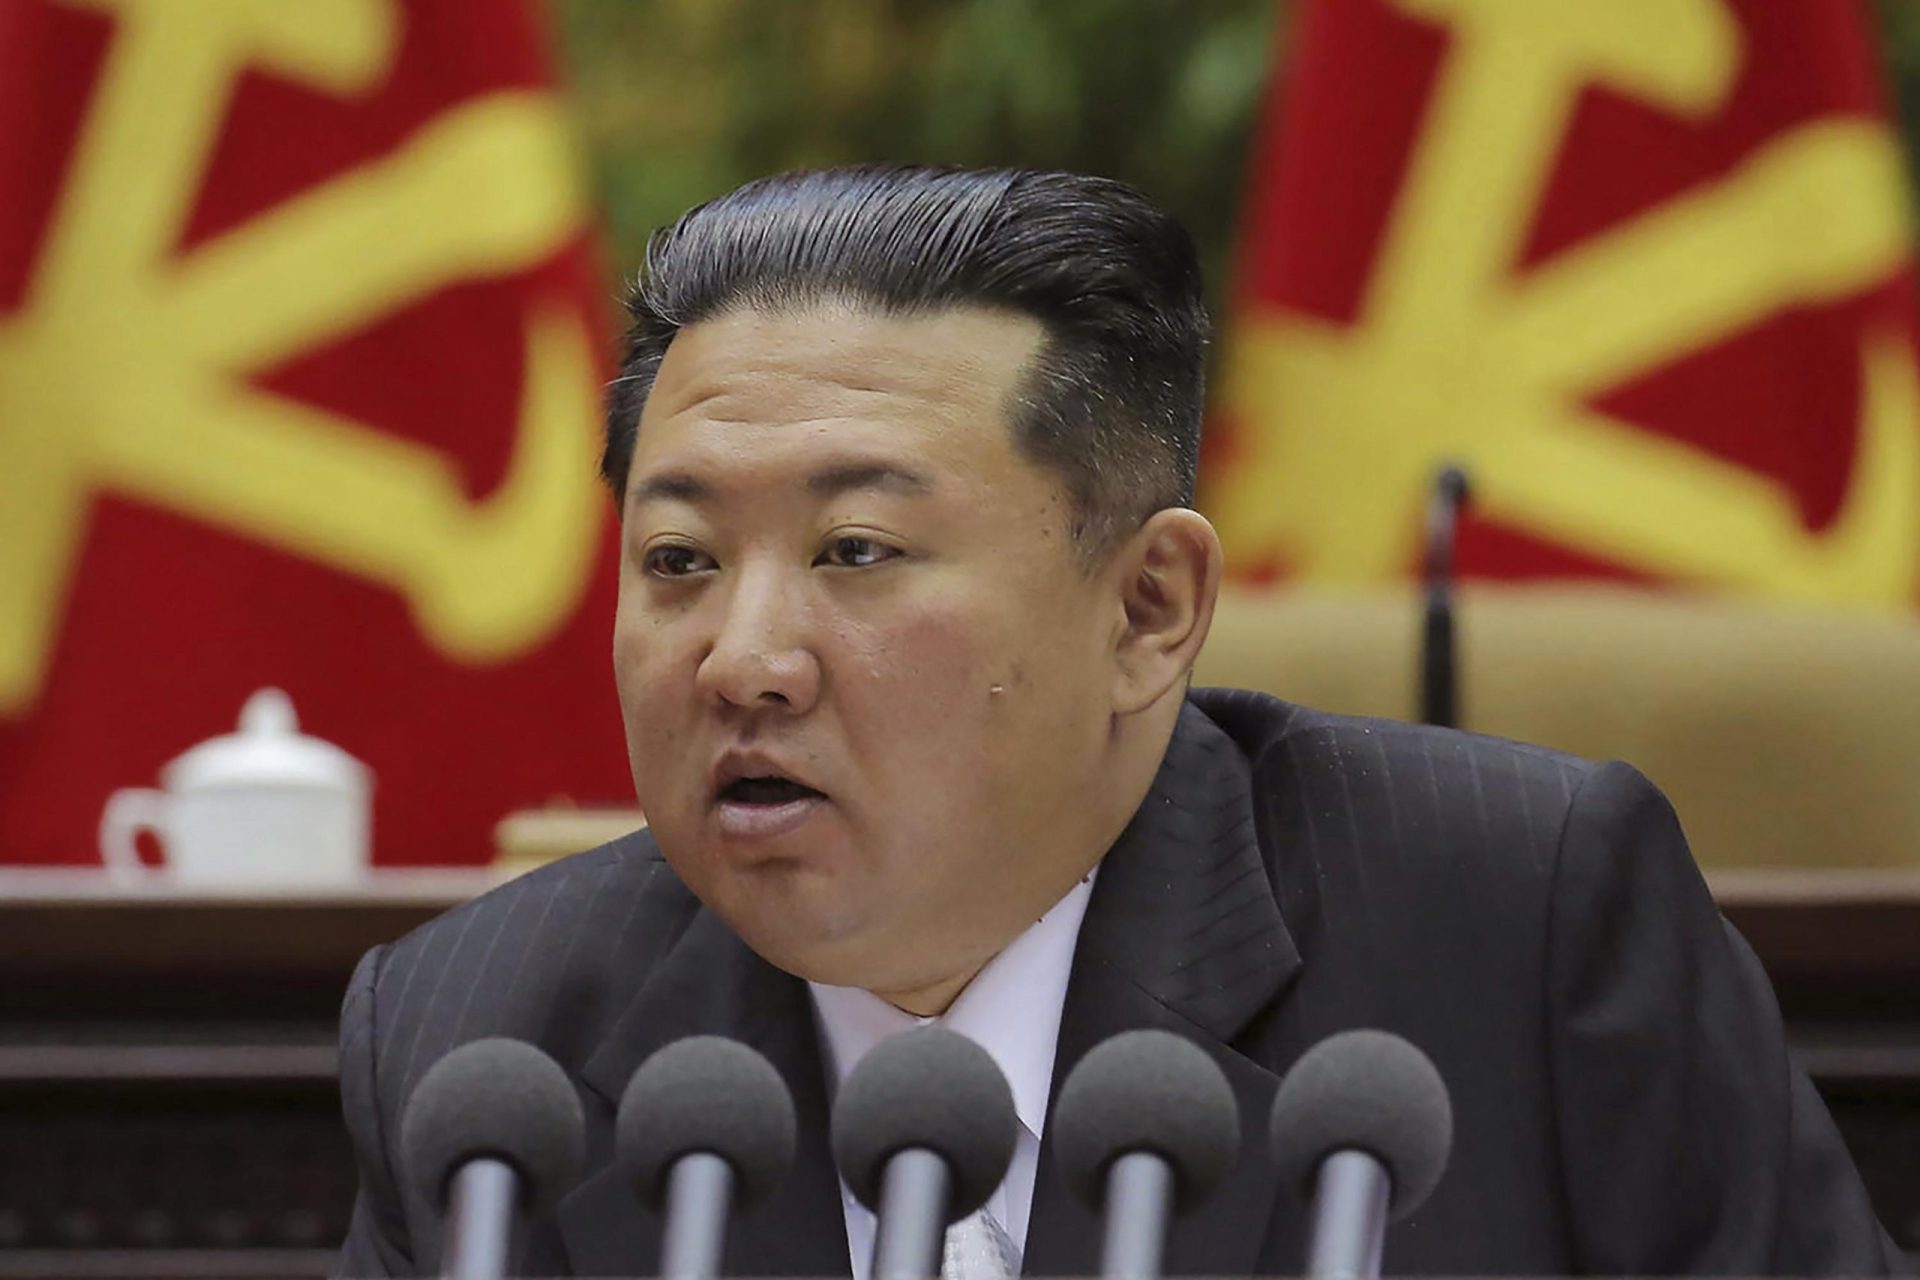 Seúl: Misil norcoreano explotó en el aire en lanzamiento fallido